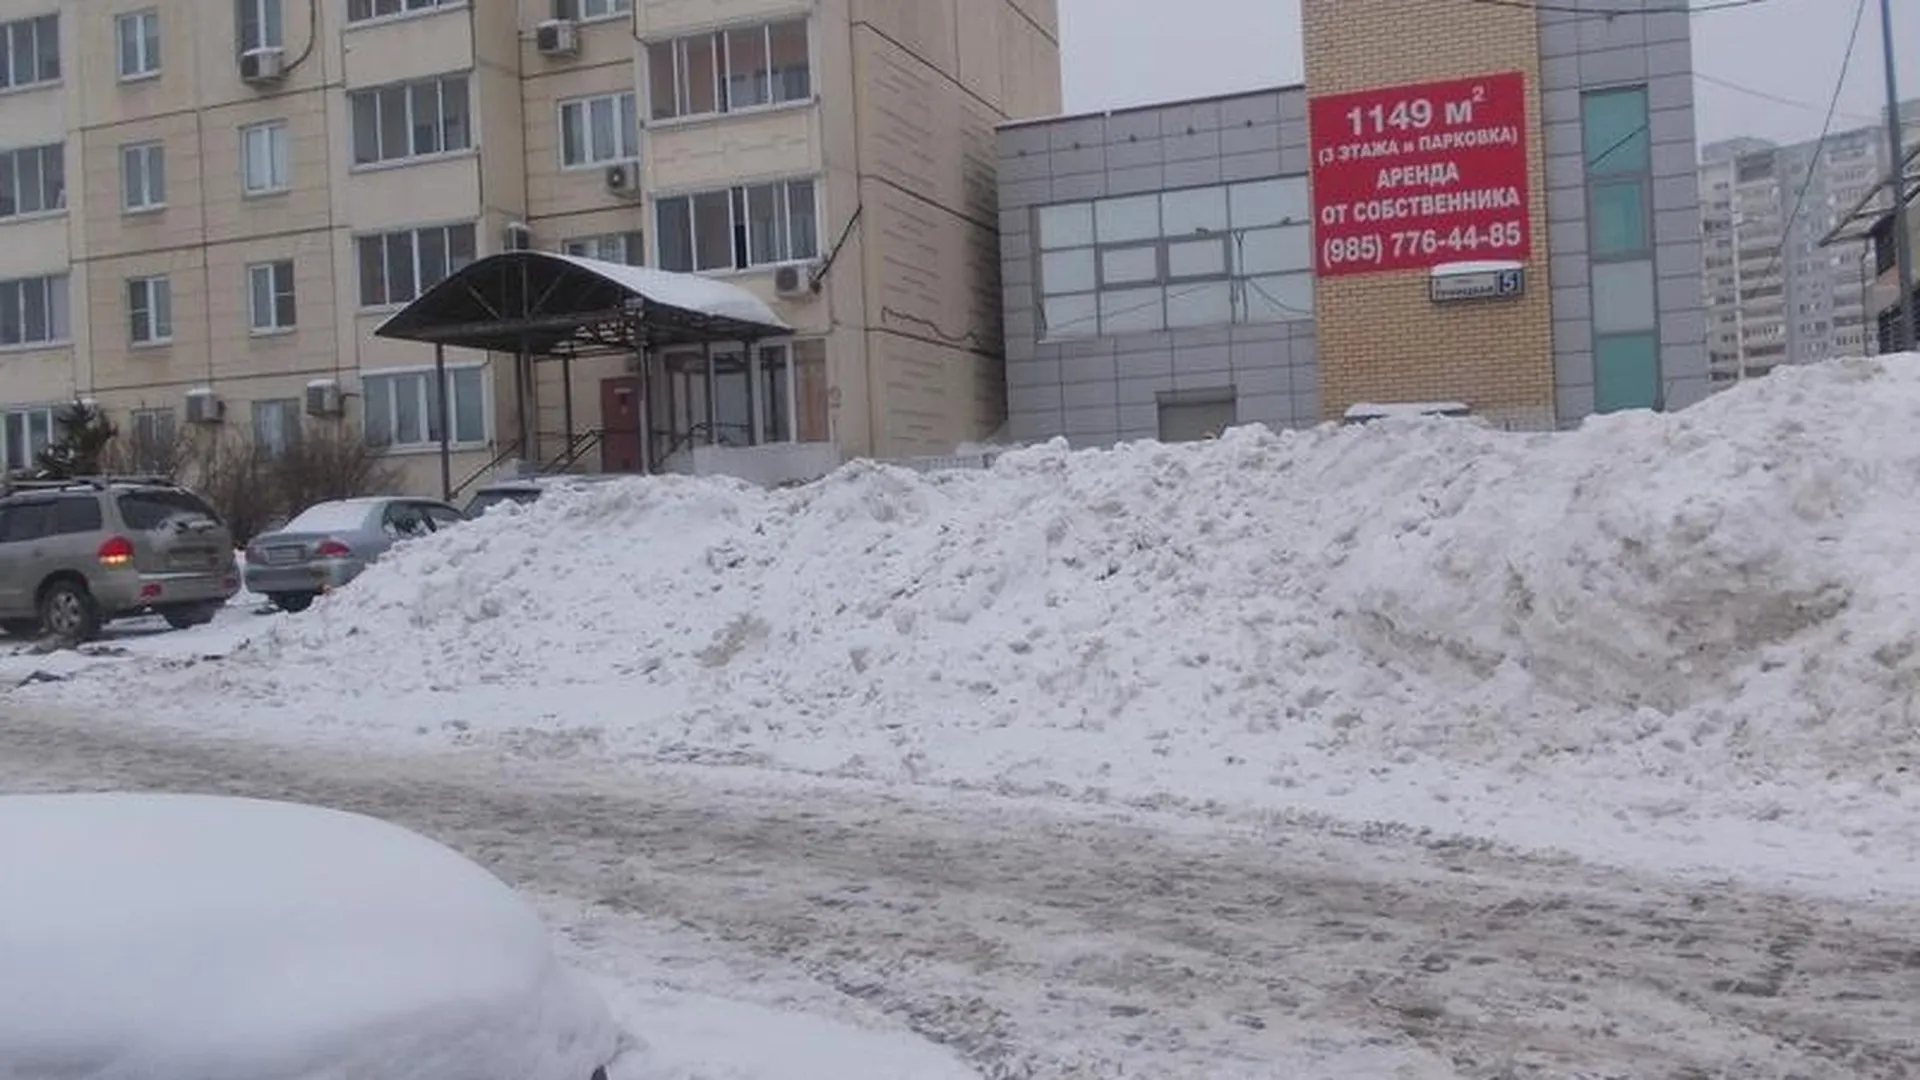 УК в Мытищах заставили вывезти снег с парковки